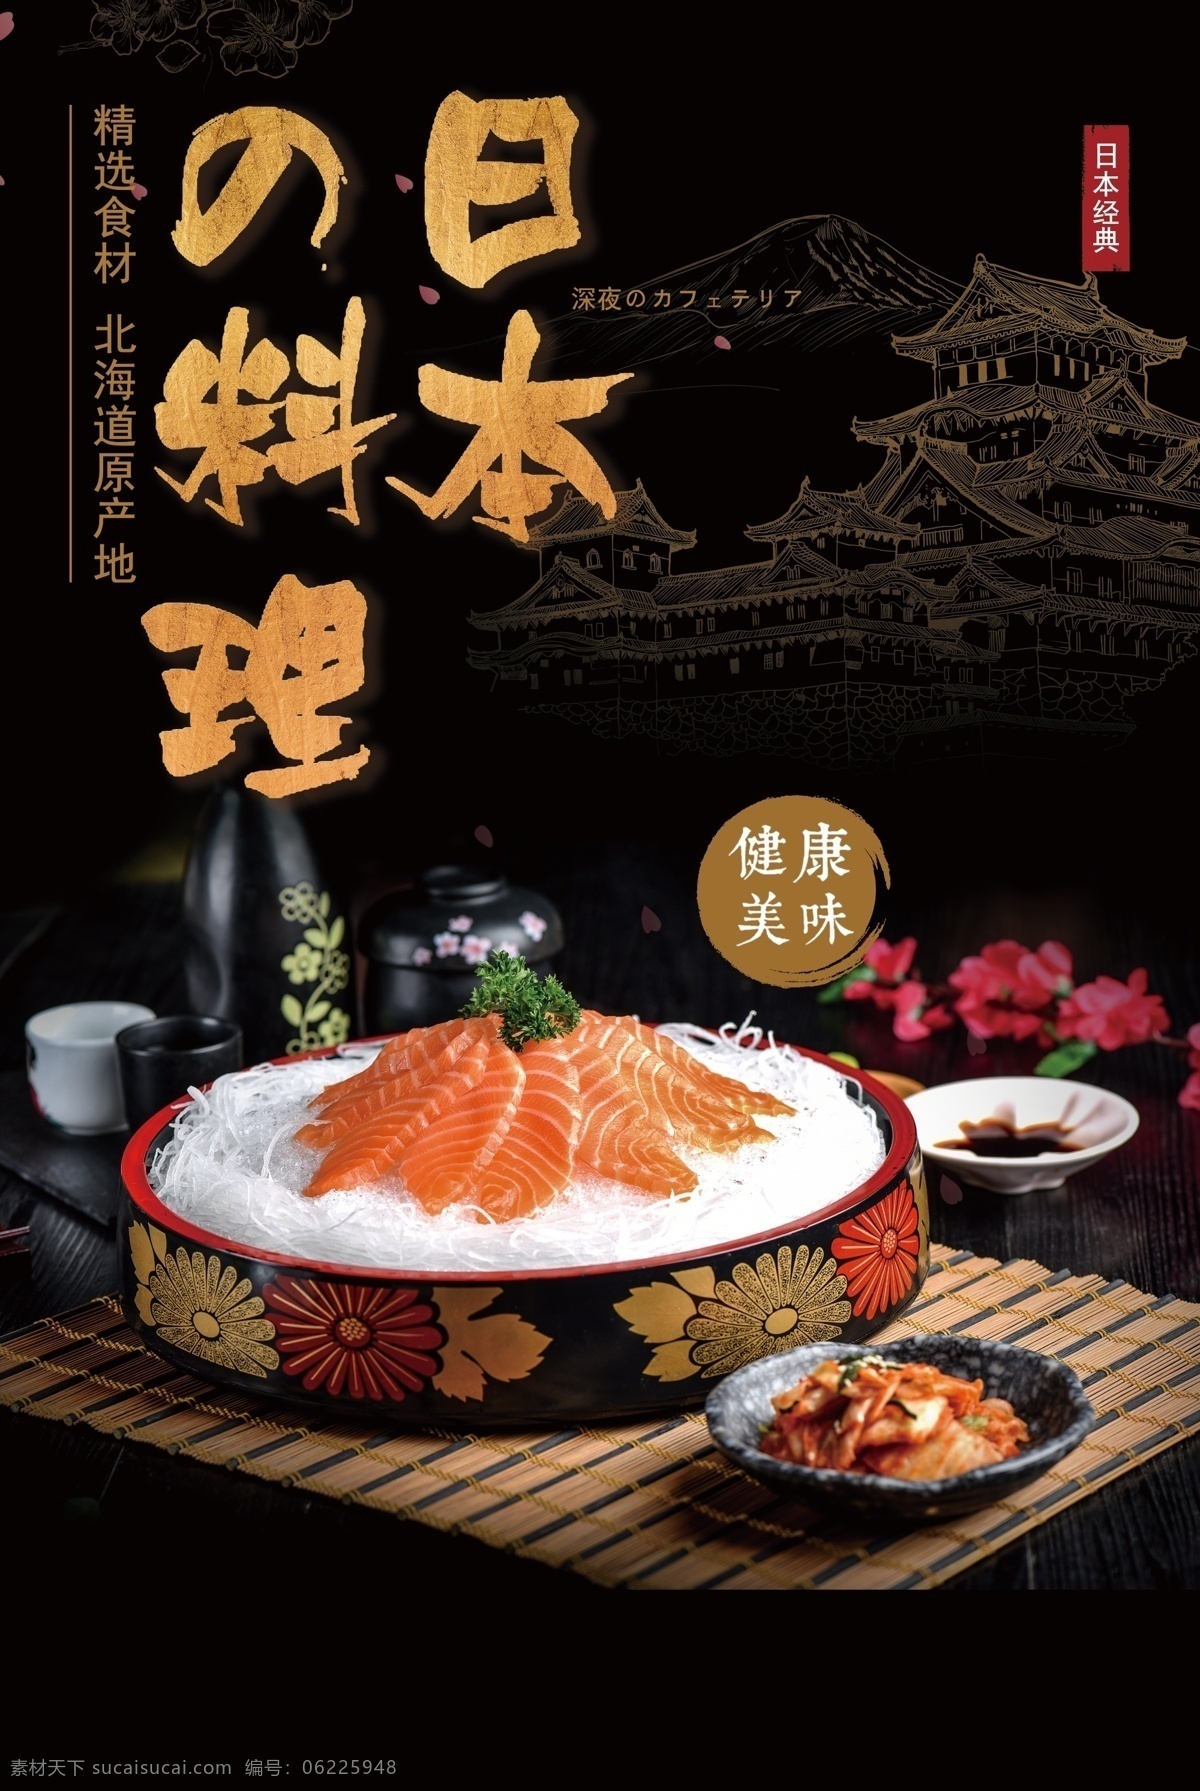 日本料理 美食 活动 宣传海报 素材图片 宣传 海报 餐饮美食 类